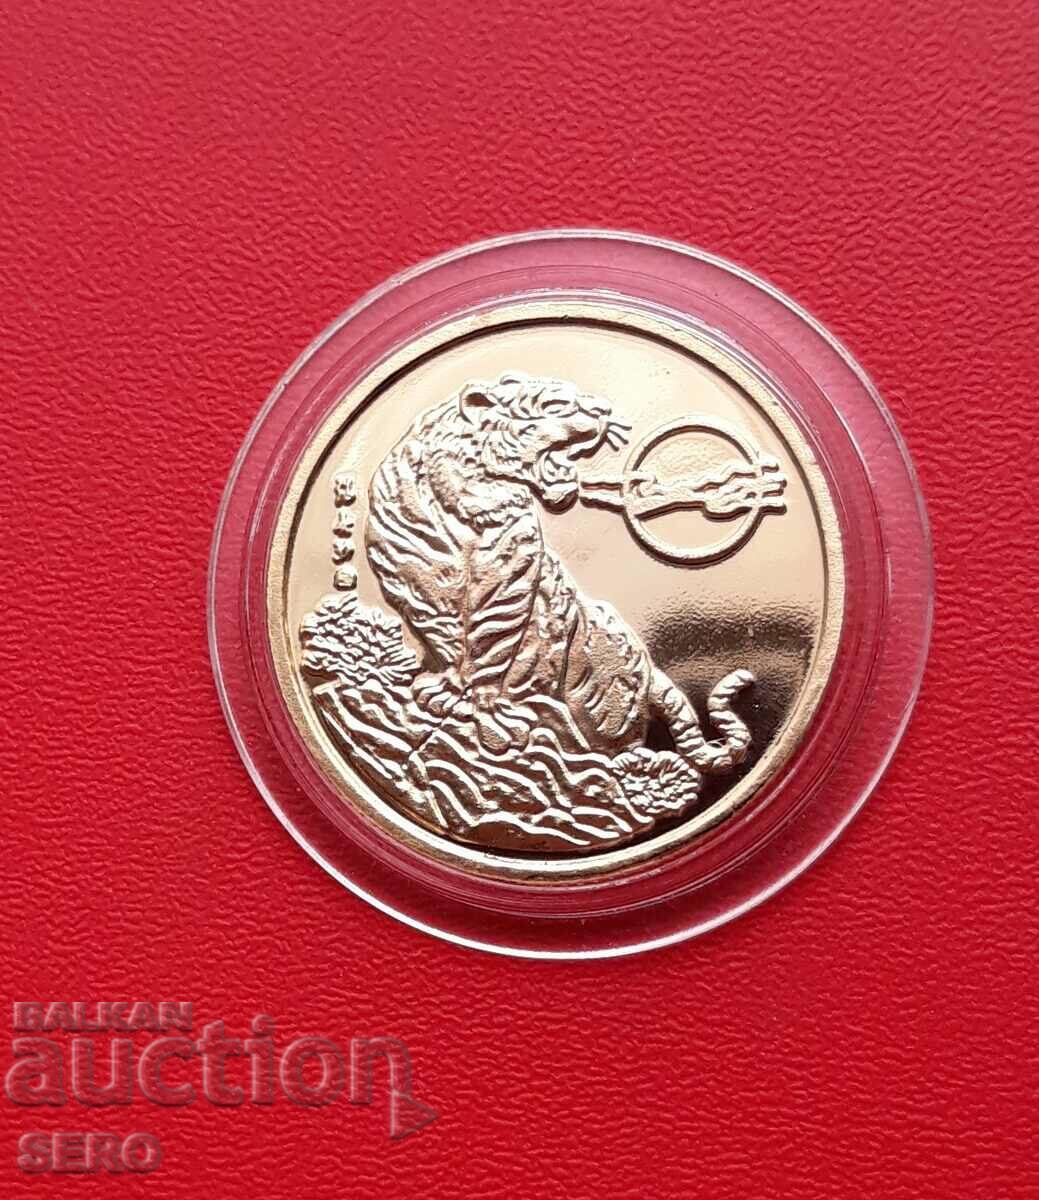 Κίνα-μετάλλιο/πλακέτα/-2010 έτος της τίγρης